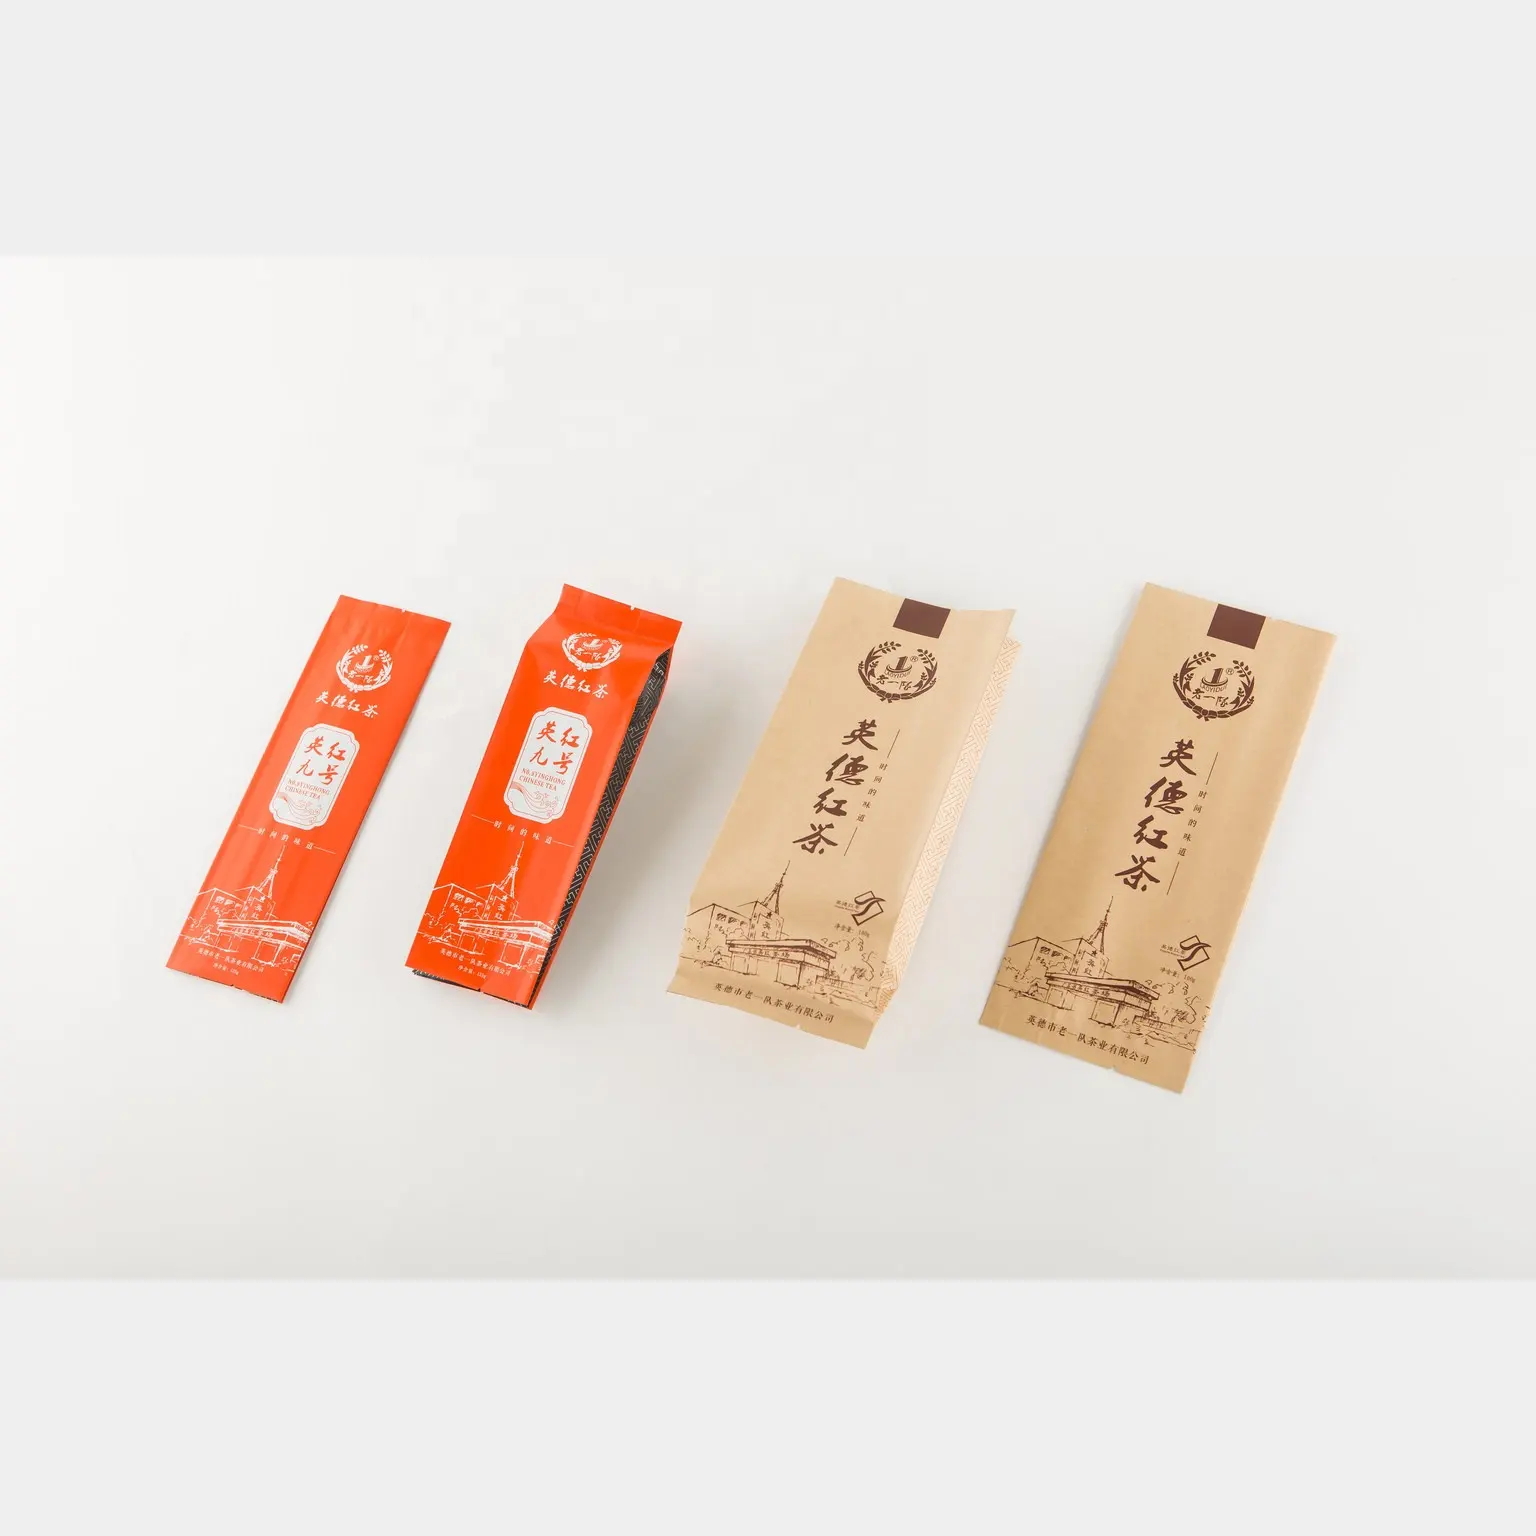 Bolsa de embalaje de té, bolsita de plástico de Papel kraft de grado alimenticio con impresión de logotipo personalizado, bolsa de refuerzo lateral sellada en el centro